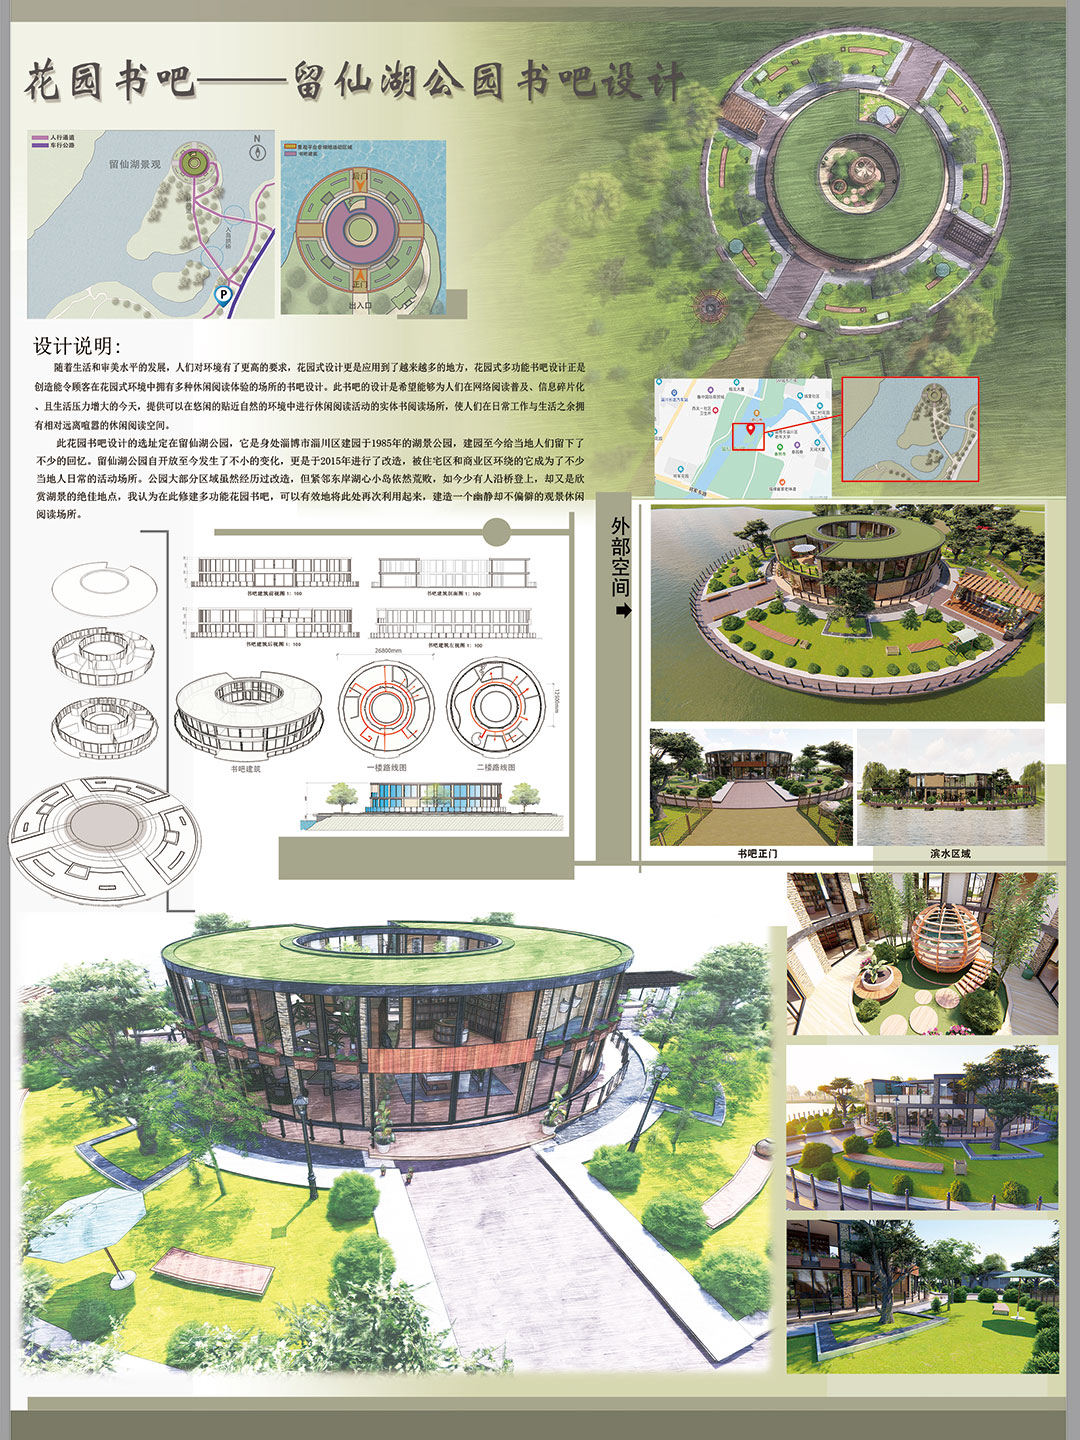 青岛大学 | 景观设计 | 《花园书吧——留仙湖公园书吧设计》创作者：杜振宁 指导老师：卢晶